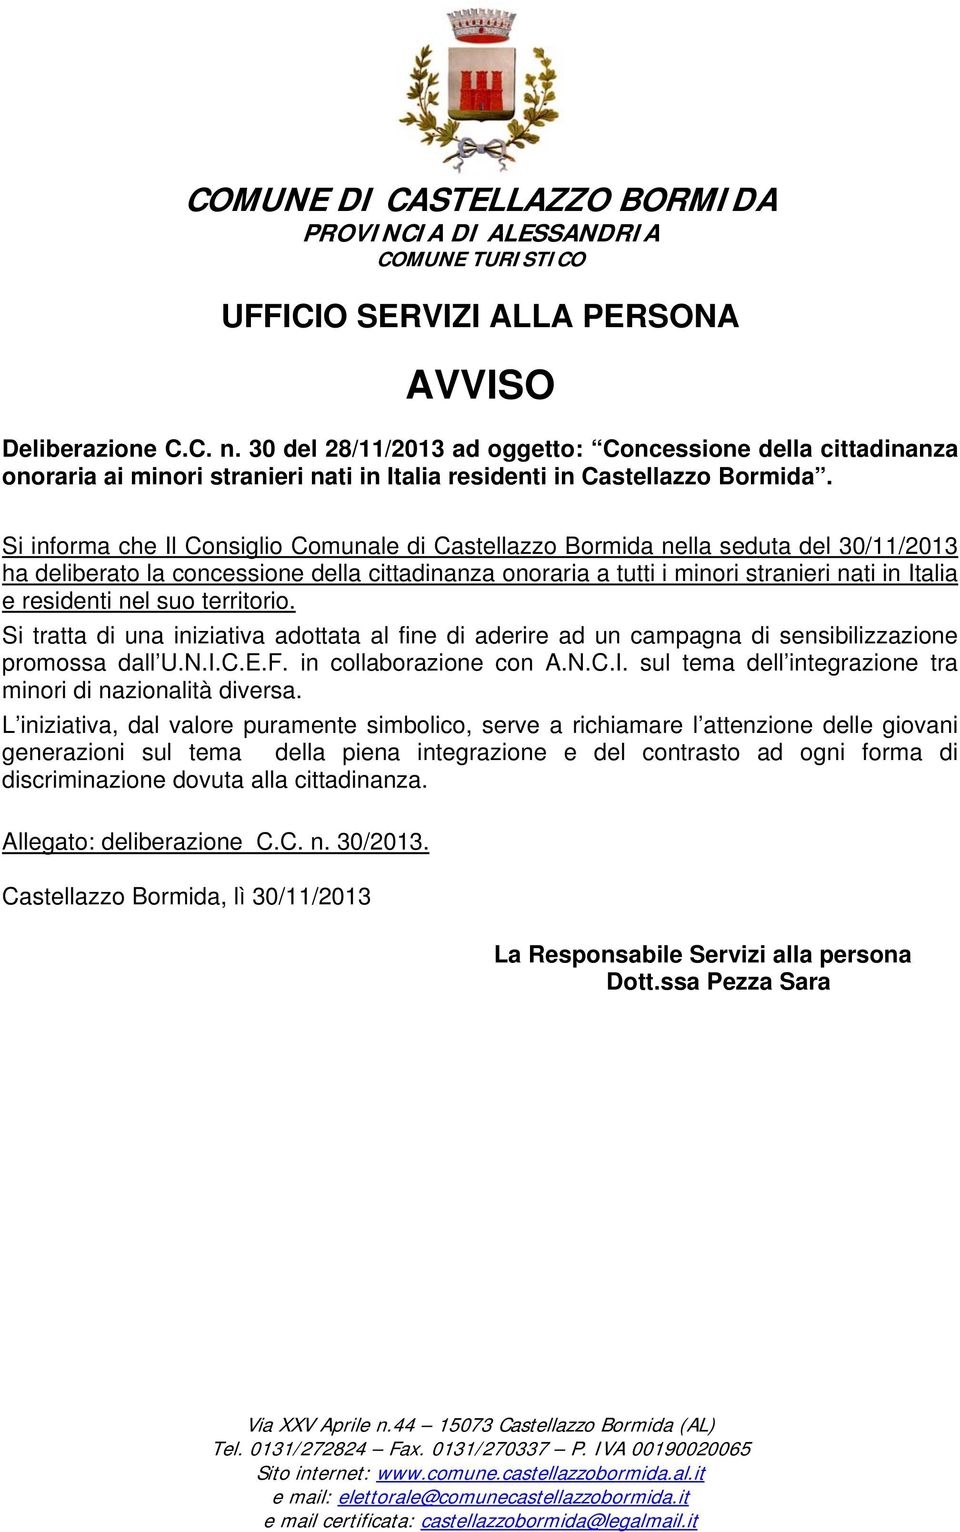 Si informa che Il Consiglio Comunale di Castellazzo Bormida nella seduta del 30/11/2013 ha deliberato la concessione della cittadinanza onoraria a tutti i minori stranieri nati in Italia e residenti